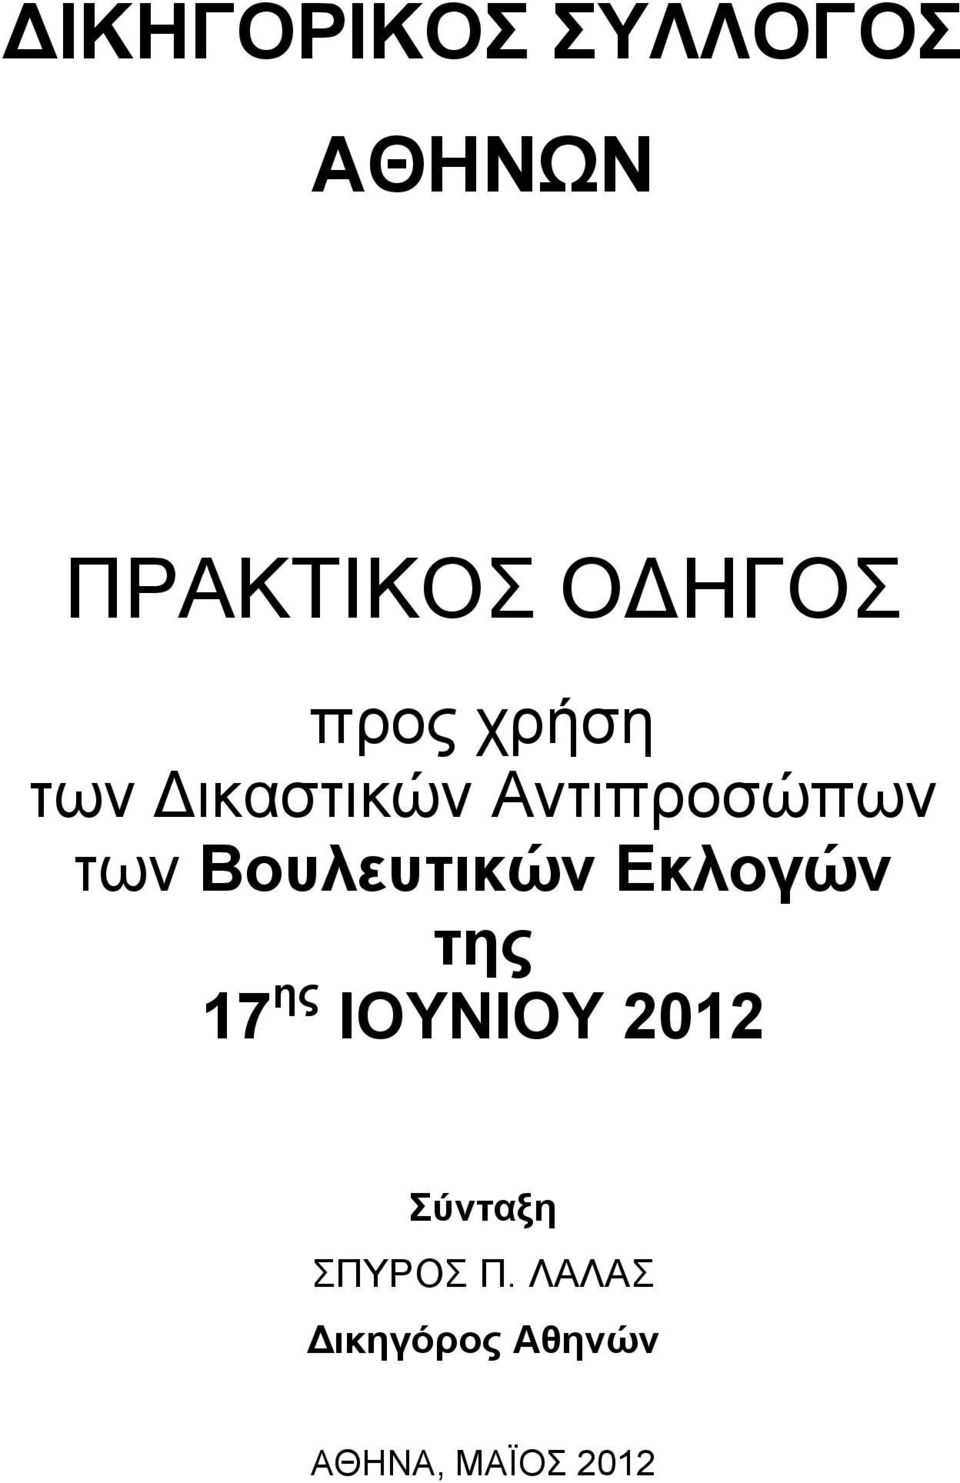 Βουλευτικών Εκλογών της 17 ης ΙΟΥΝΙΟΥ 2012